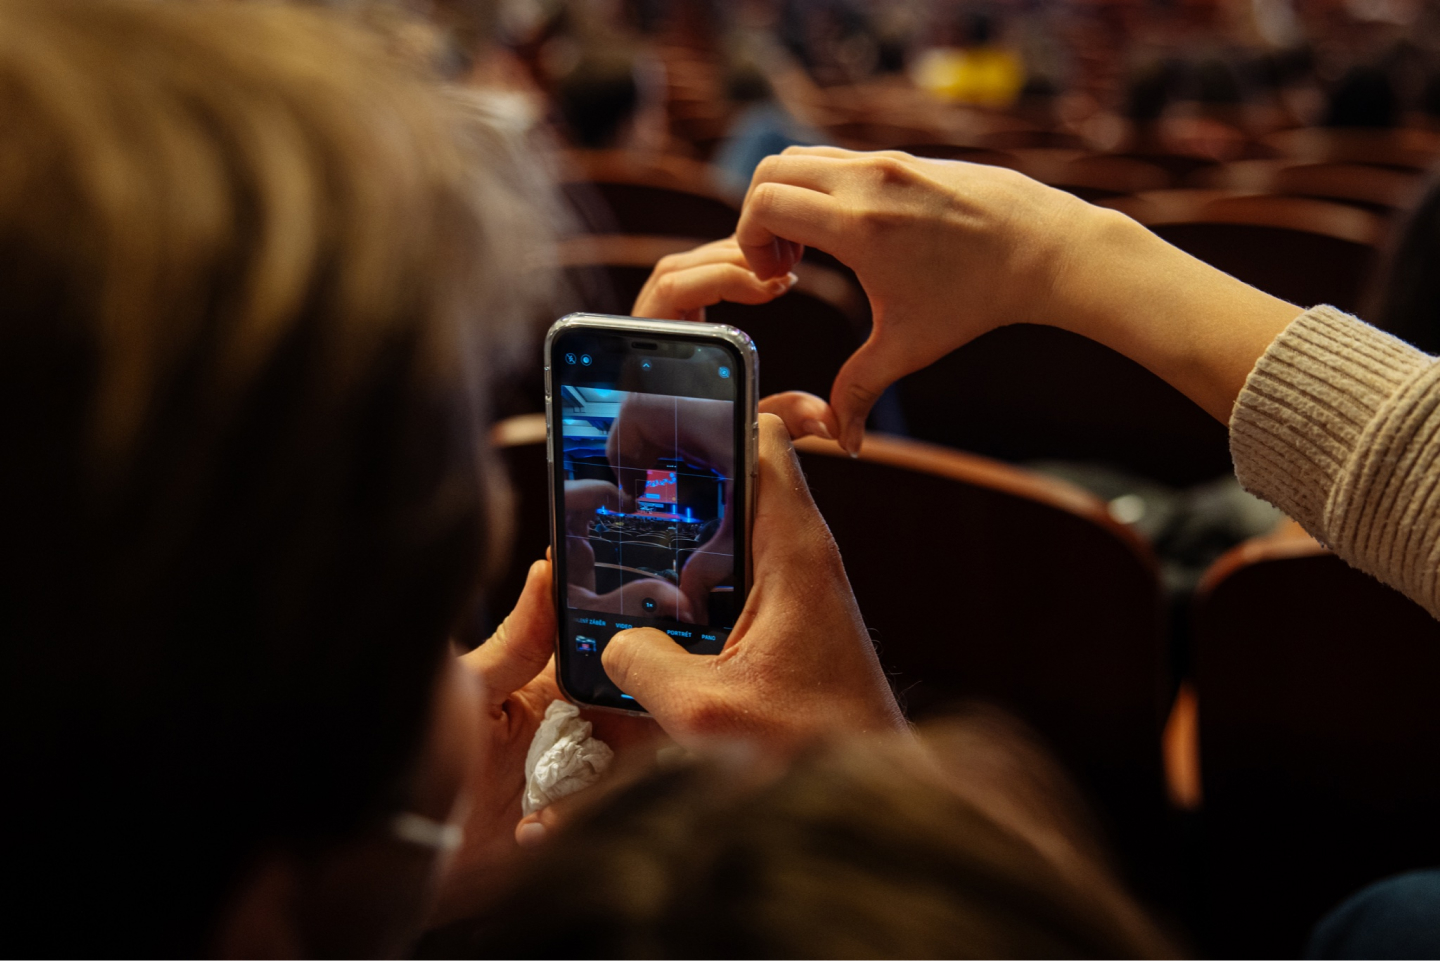 Divák v kině drží v ruce mobilní telefon a fotí si projekční plátno